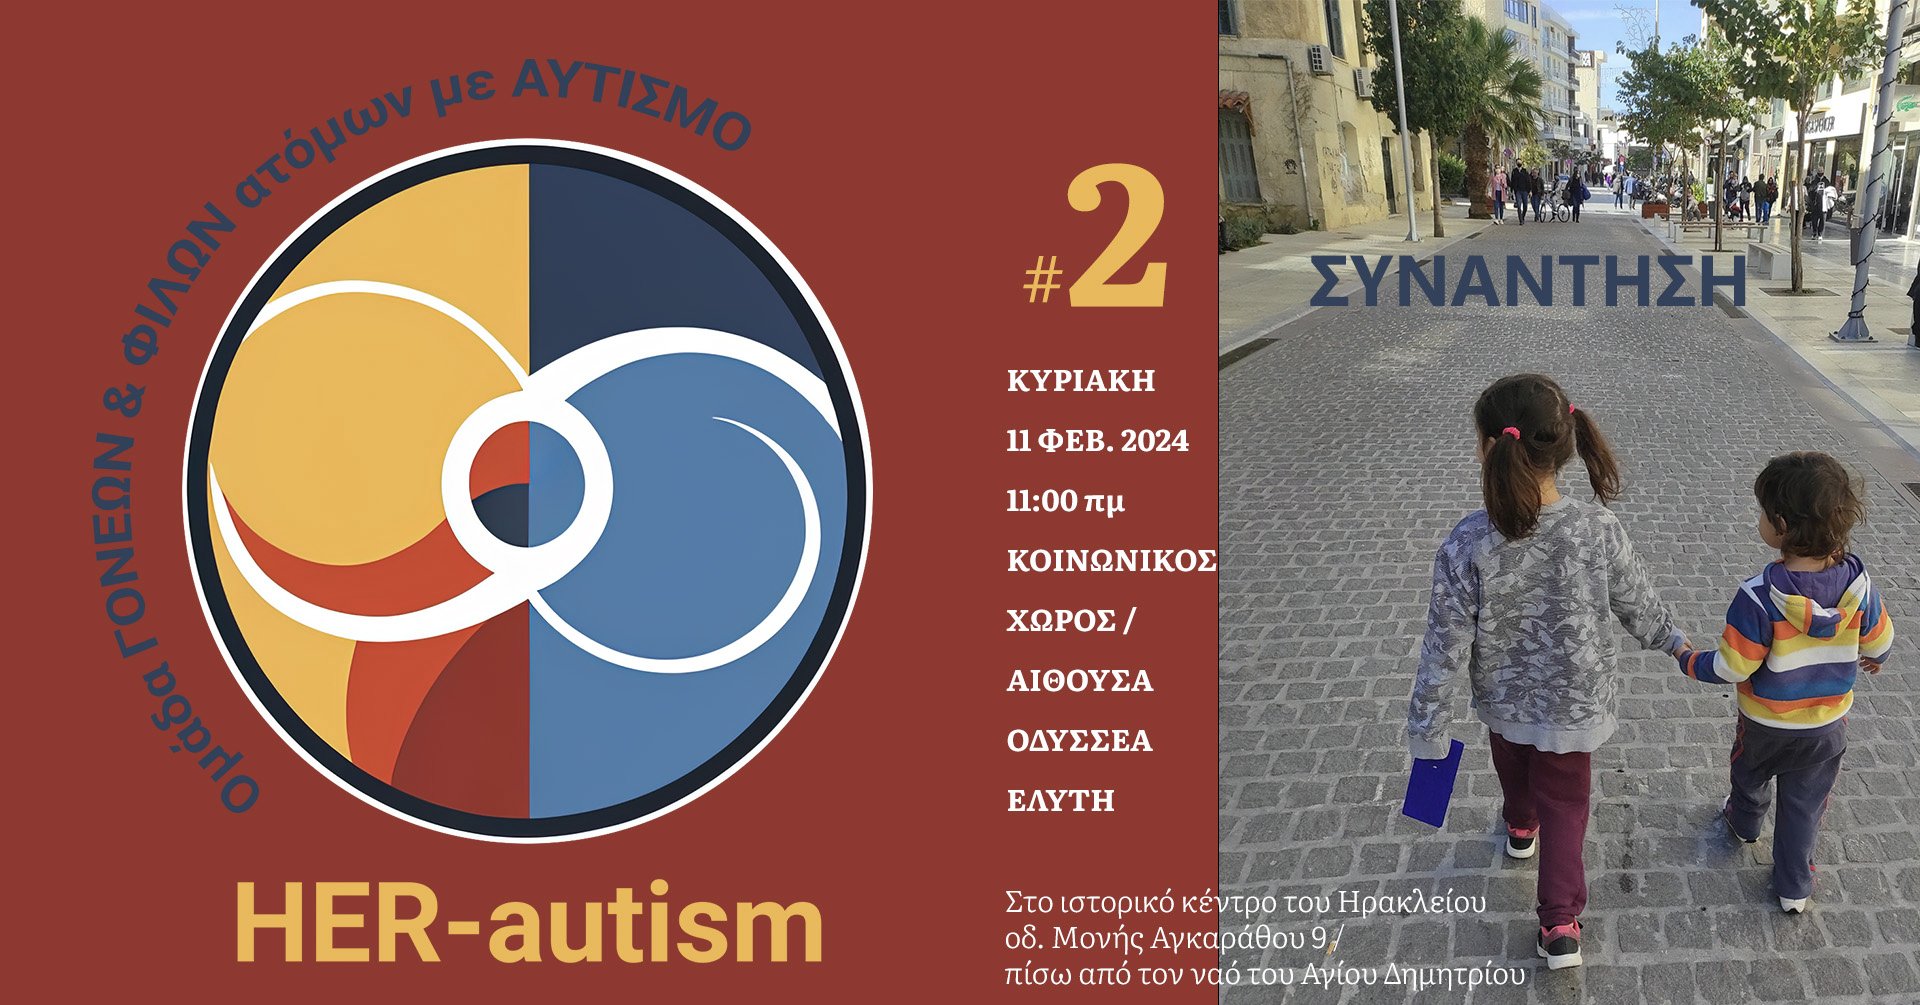 Δεύτερη Ανοιχτή Συνάντηση “HER-autism” στο Ηράκλειο Κρήτης